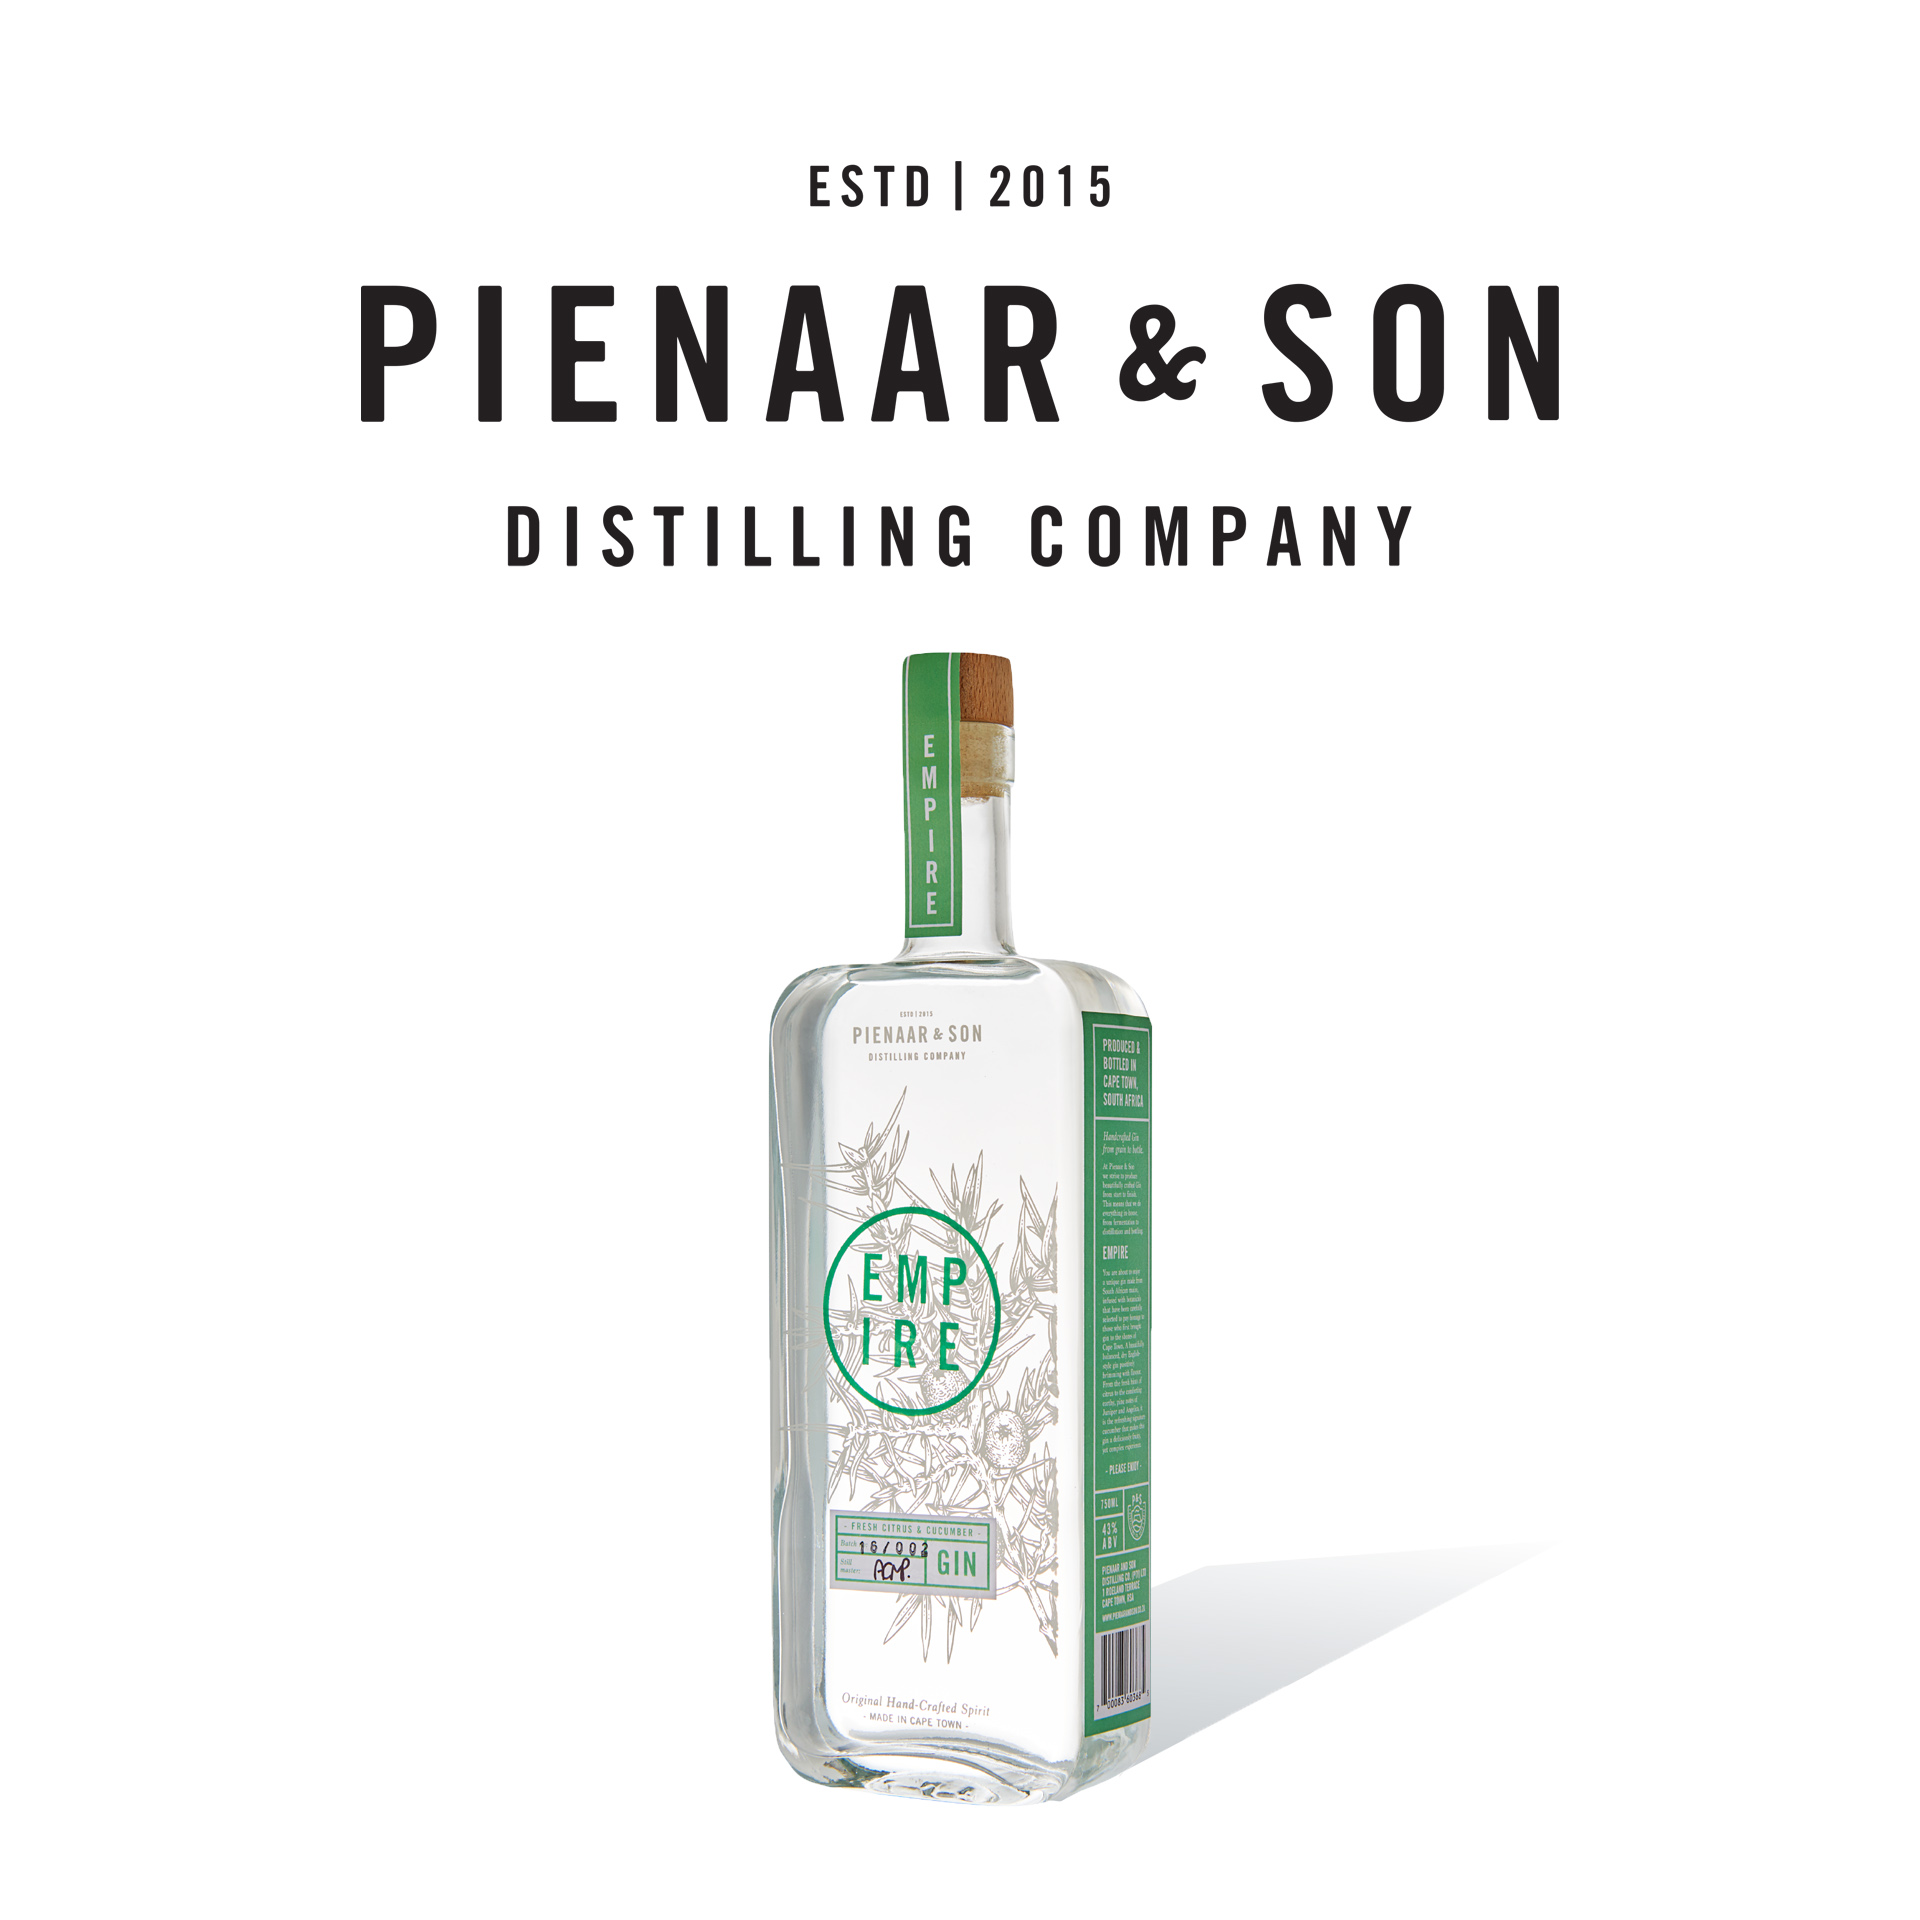 Pienaar & Son Distilling Co.